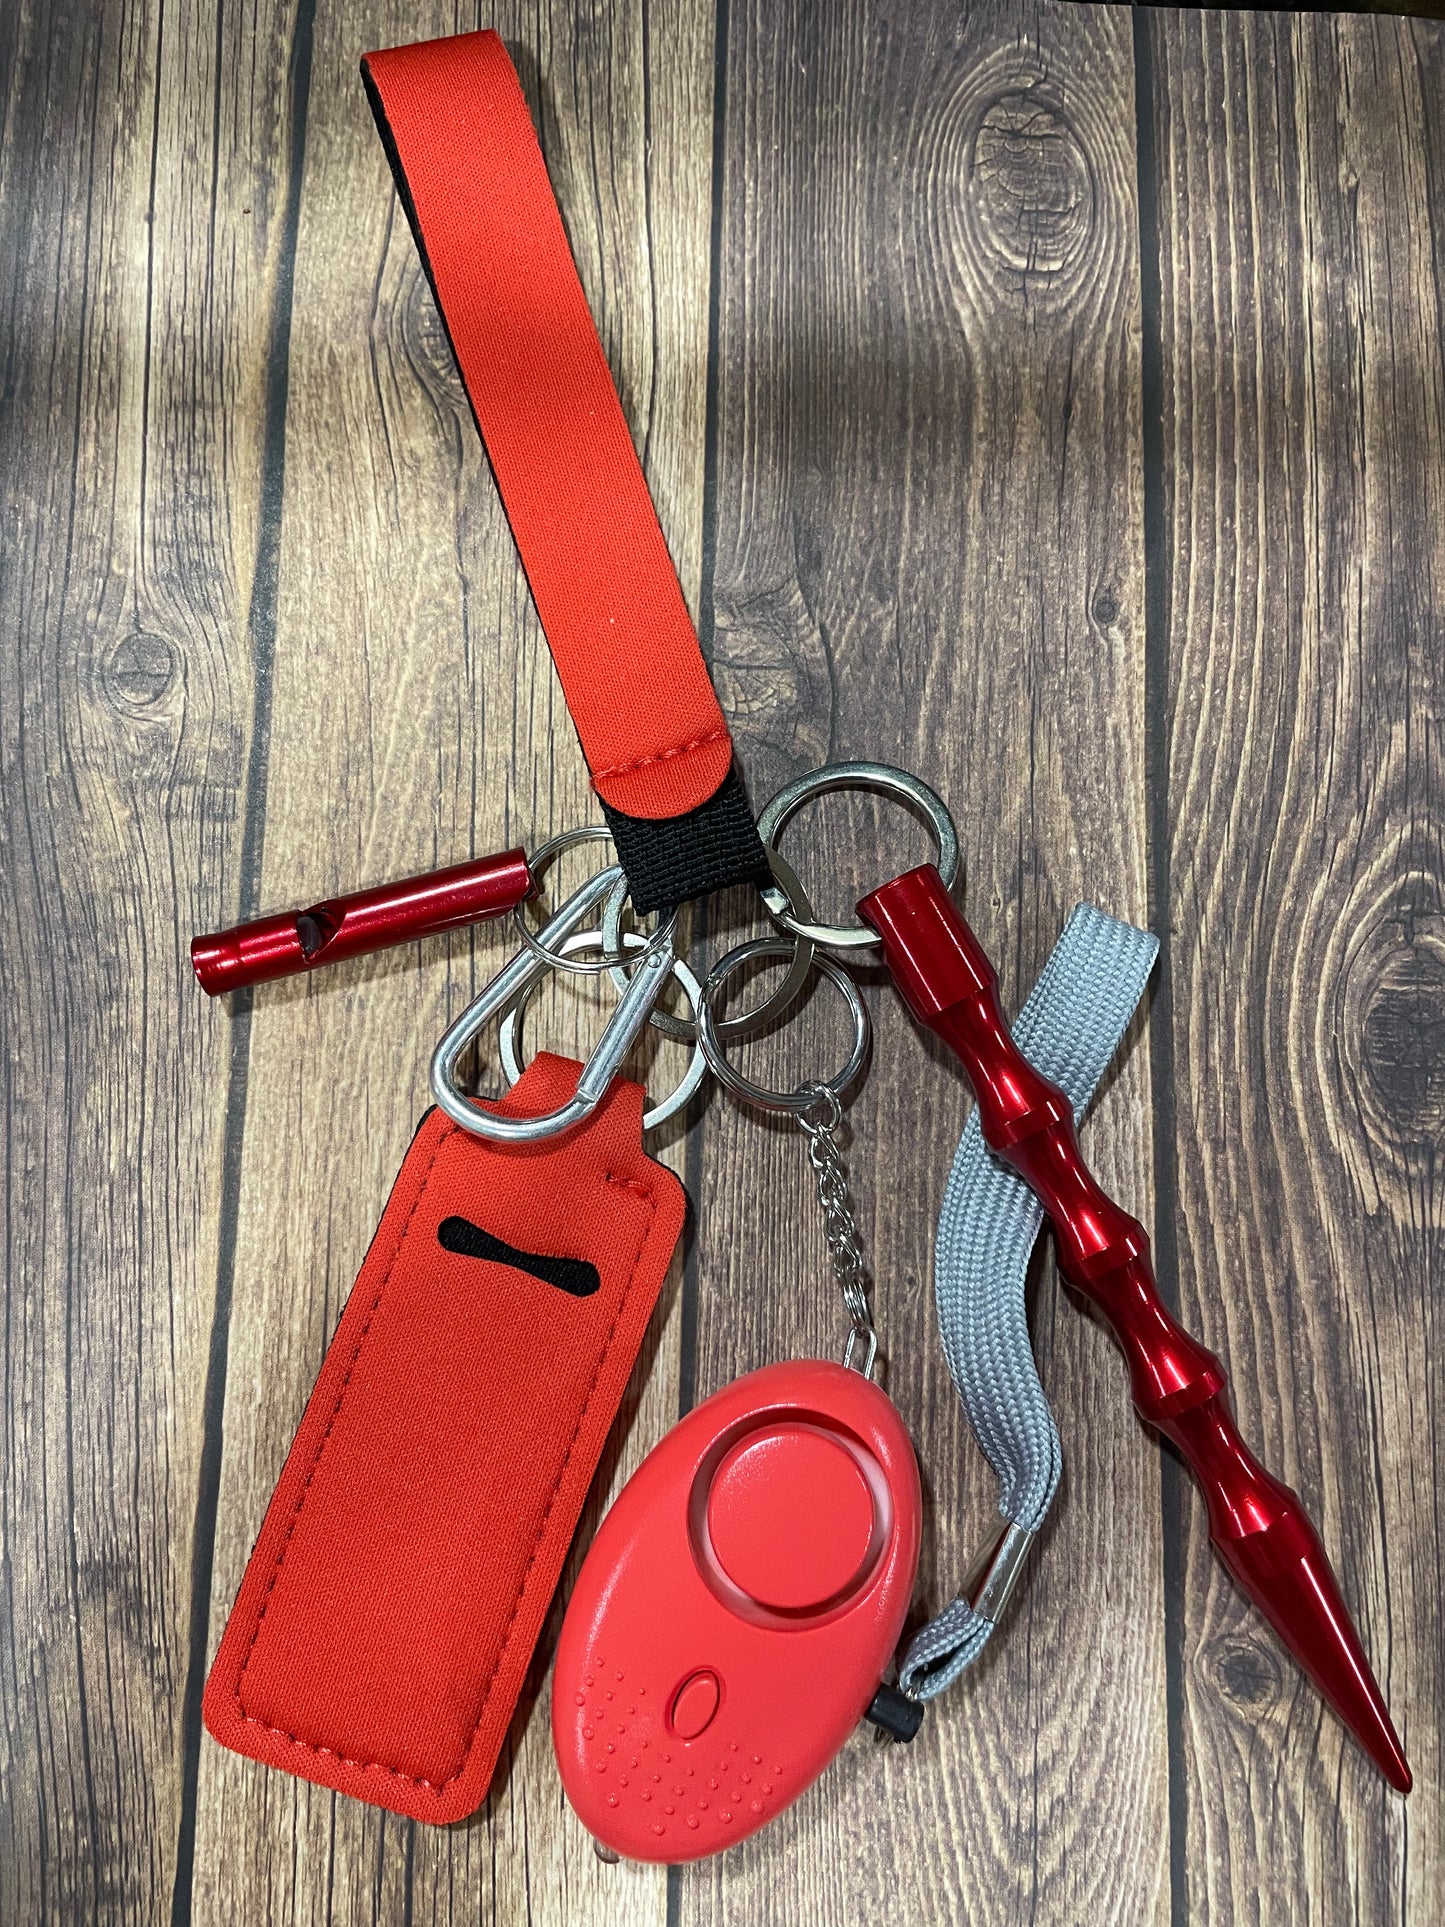 Basic safety keychain